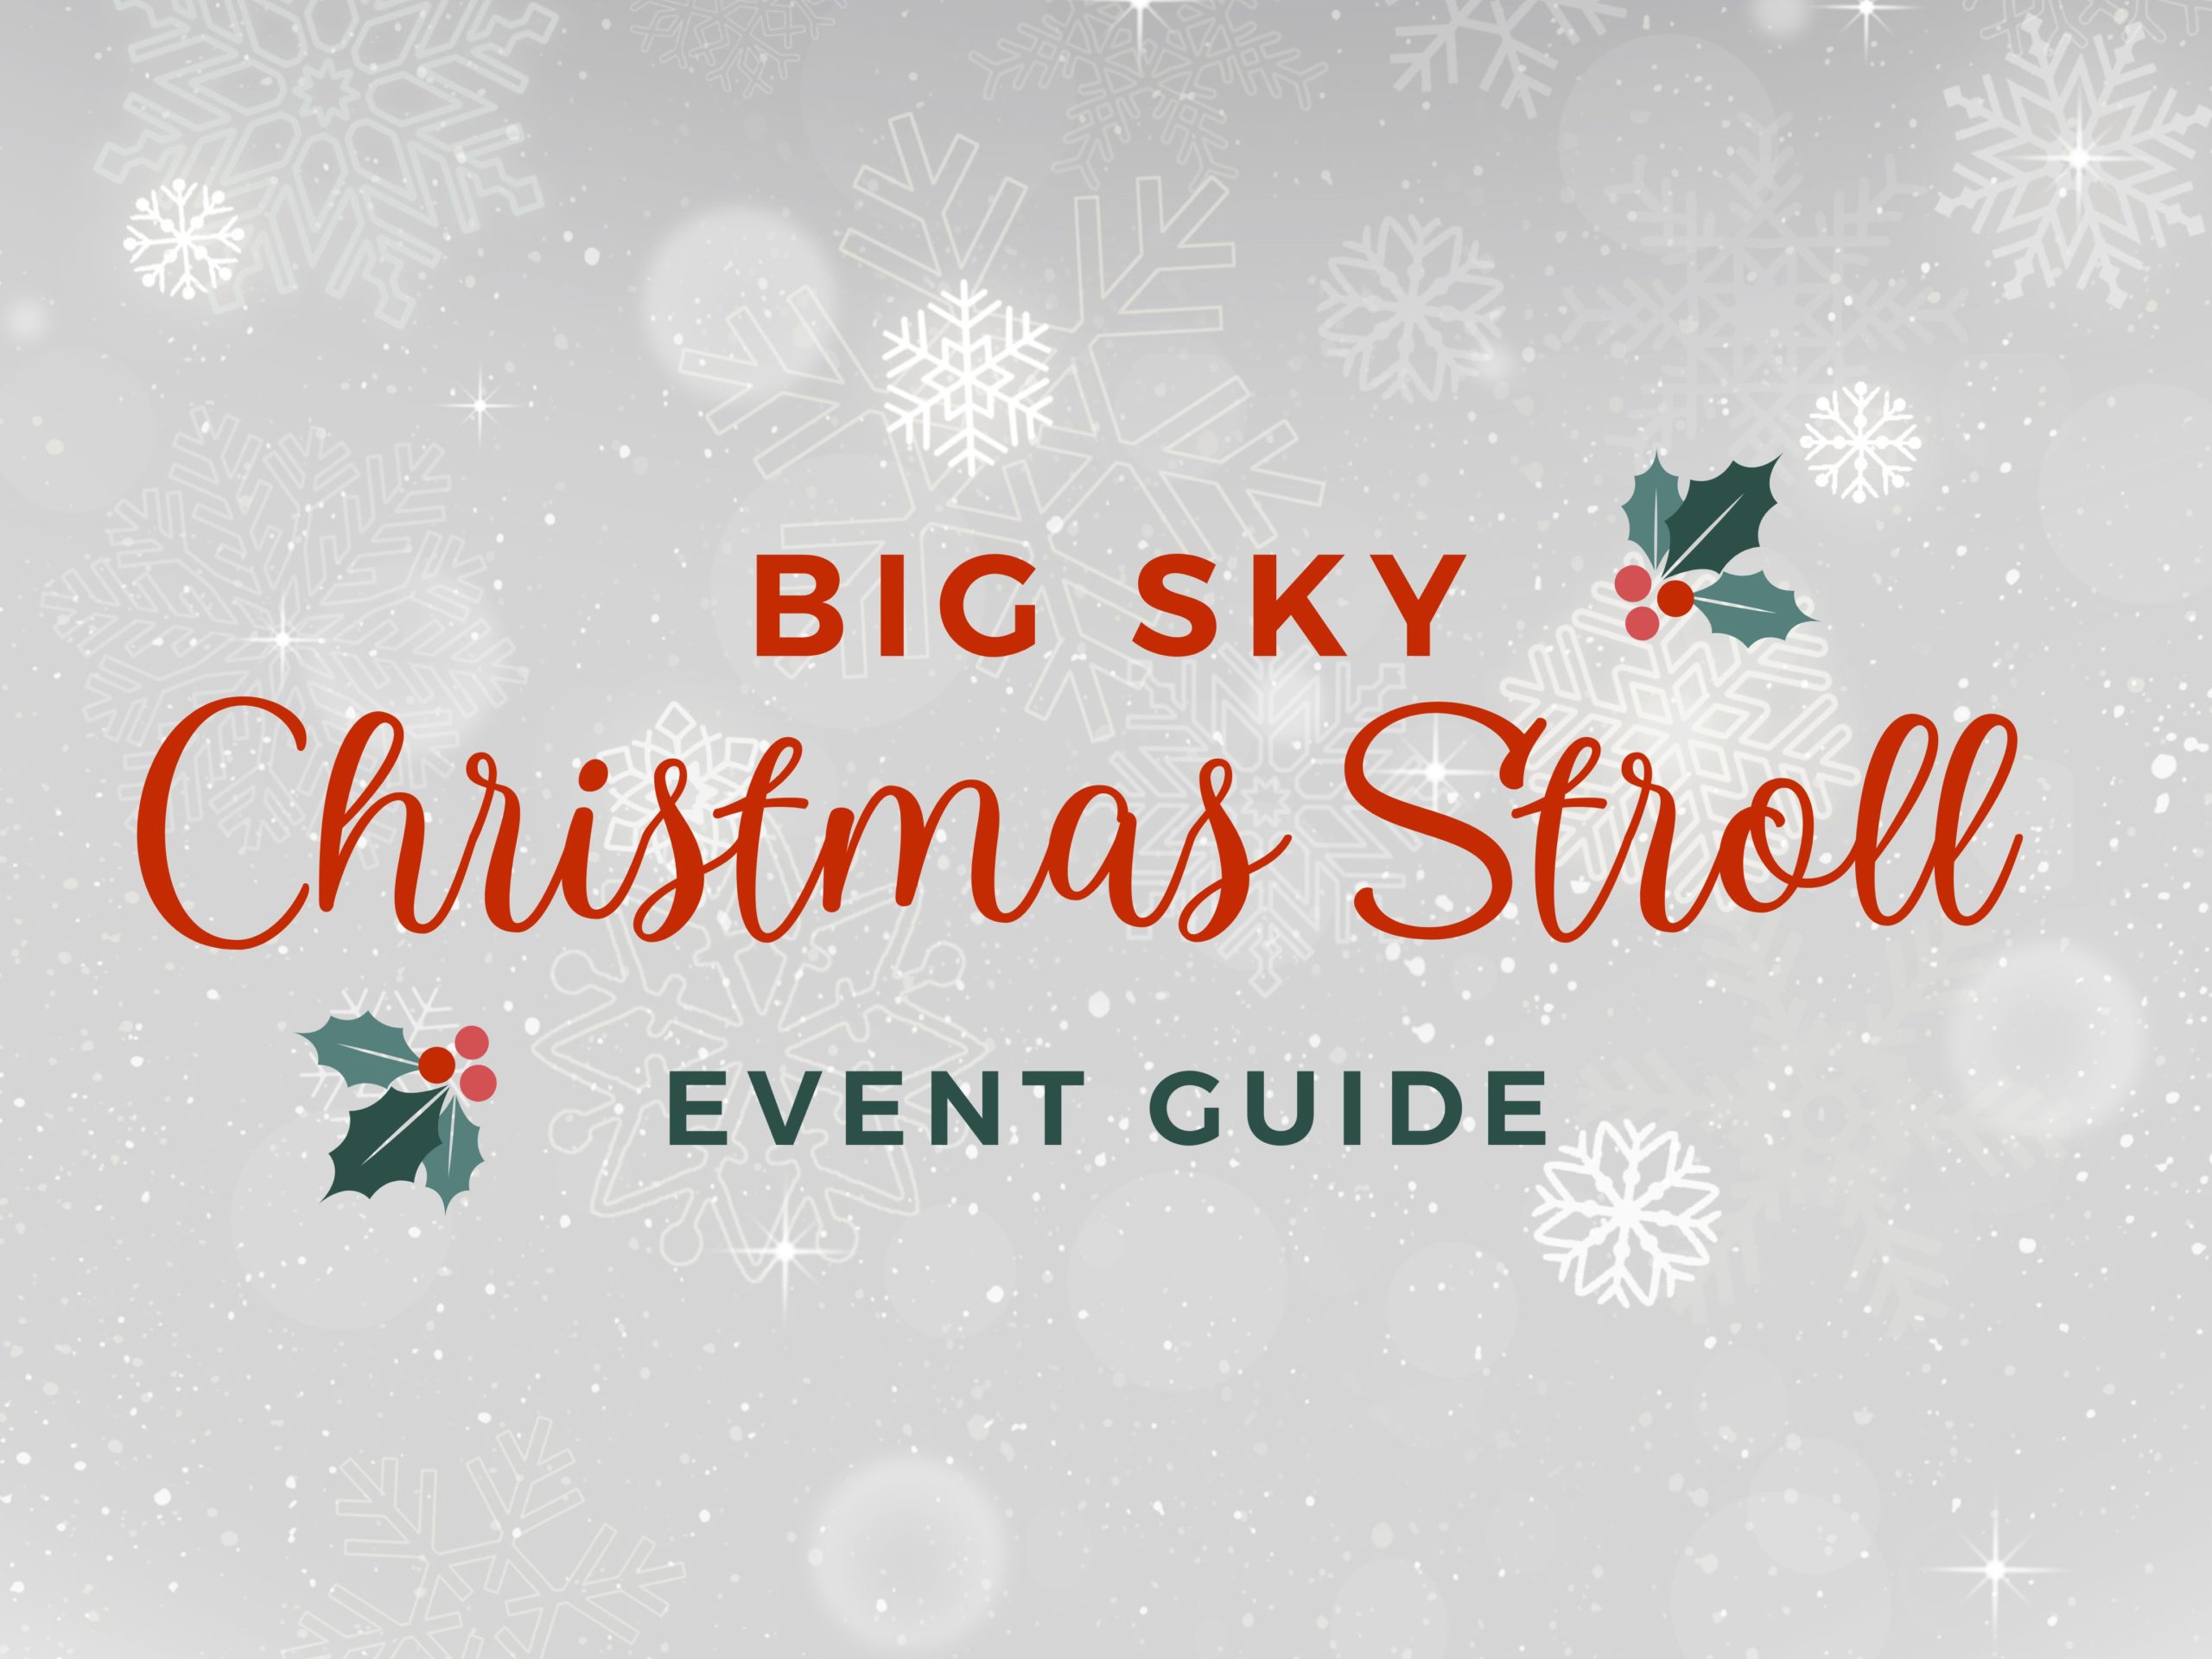 Christmas Stroll Events Guide Explore Big Sky